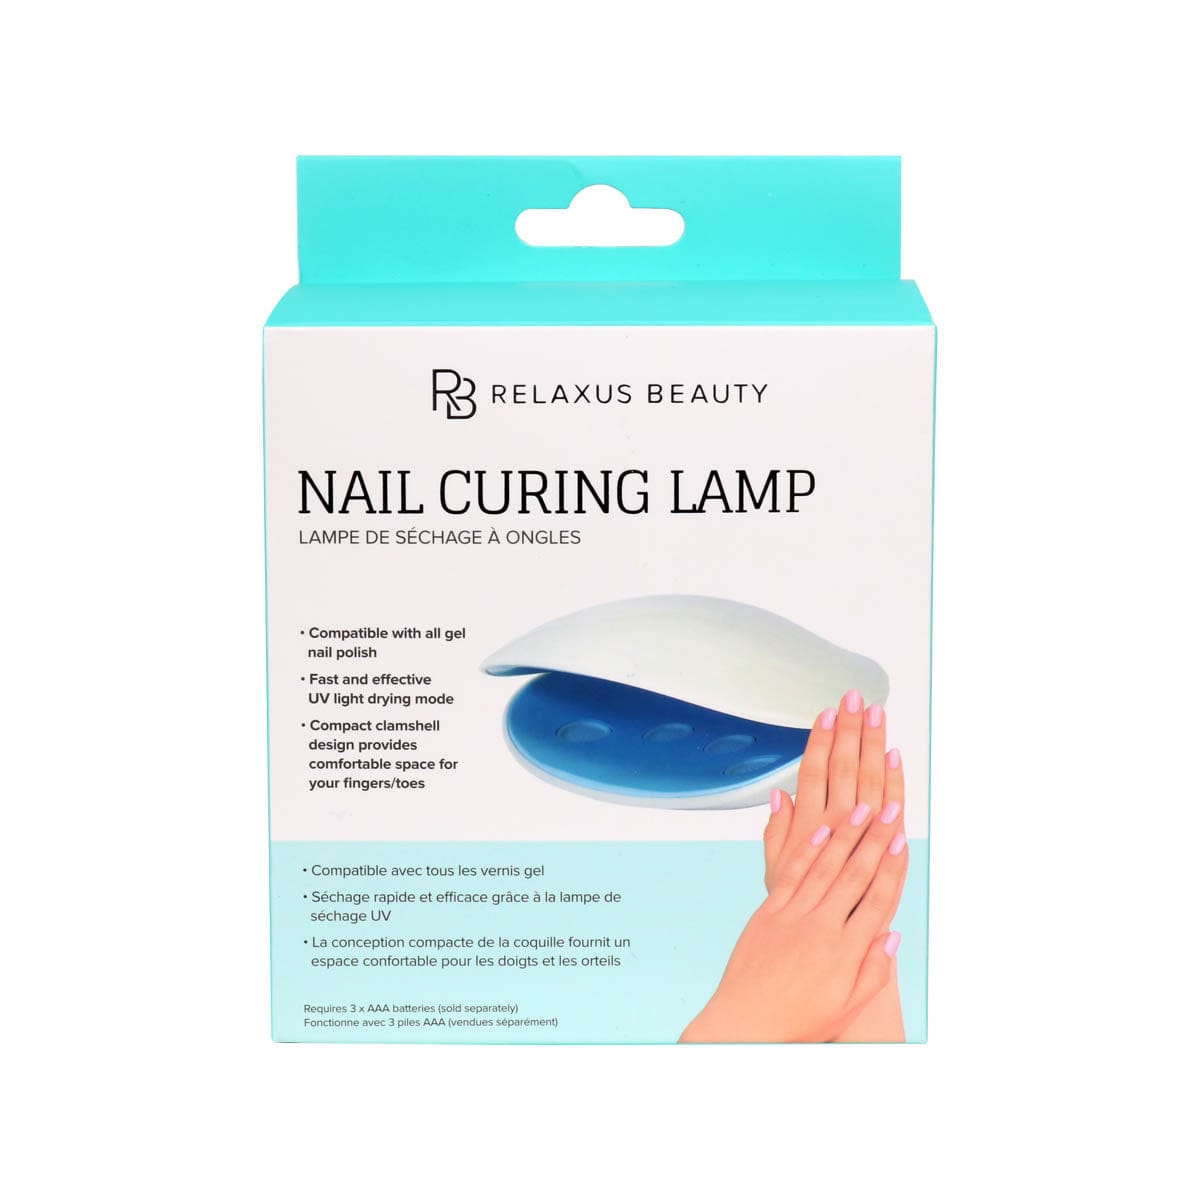 Nail Curing Lamp box